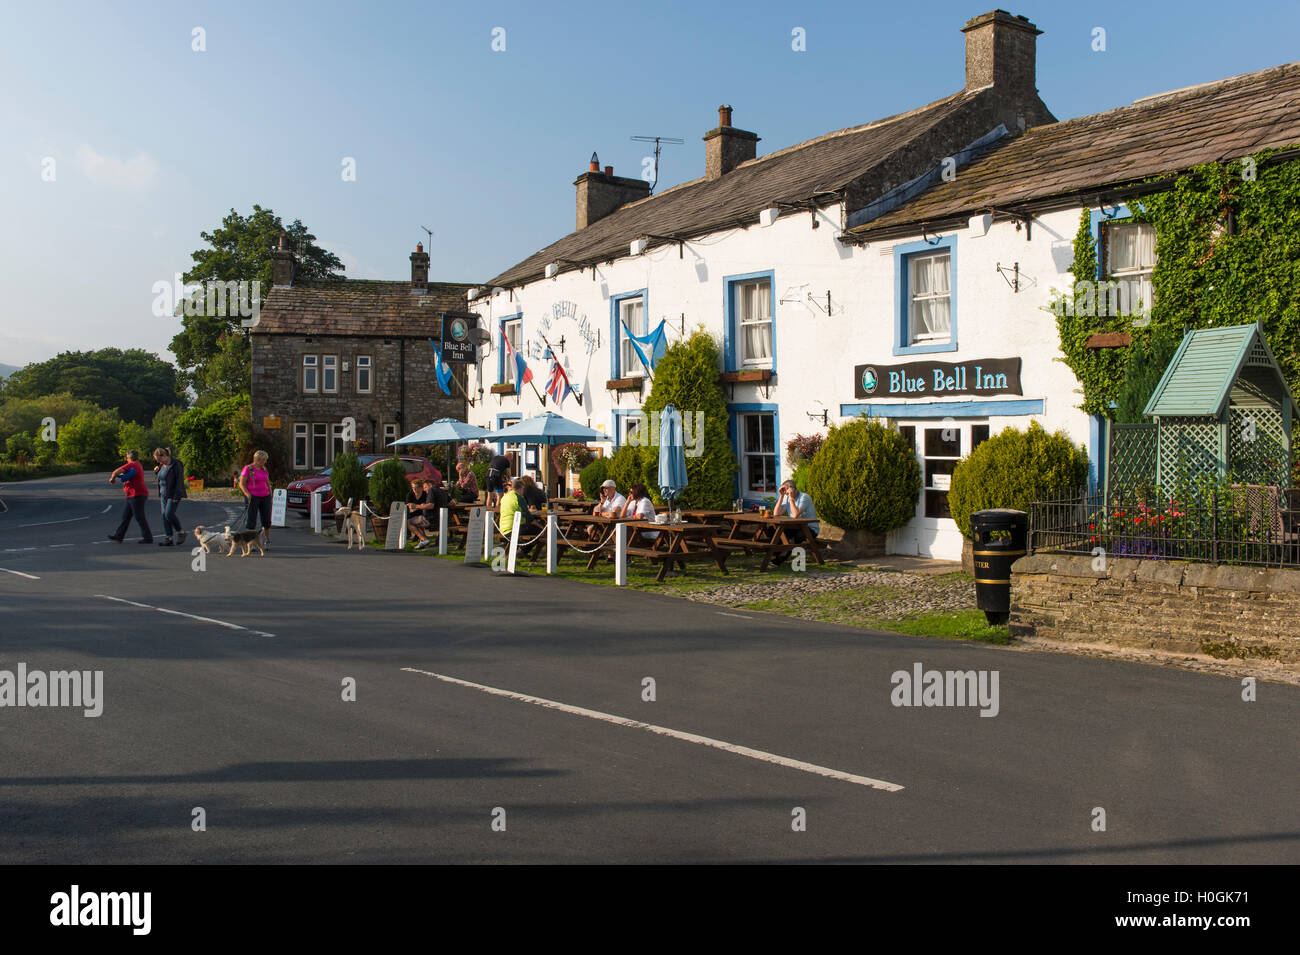 Les gens manger & boire en plein air dans le soleil à l'attrayant, pub anglais traditionnel - The Blue Bell Inn, Kettlewell, village du Yorkshire, England, UK. Banque D'Images